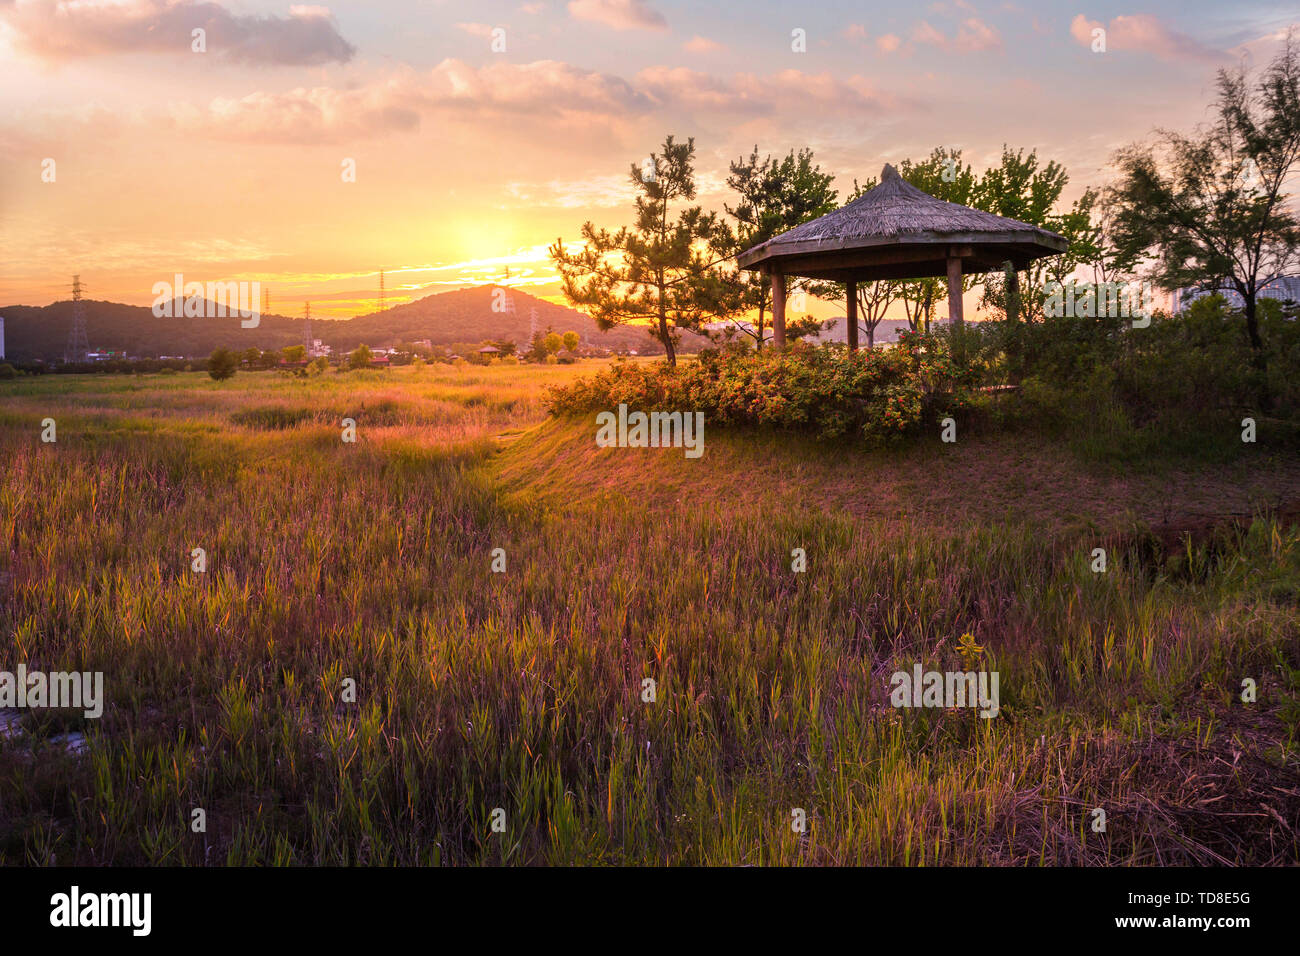 Écologie Sorae wetland park, magnifique coucher de soleil et de moulins à vent traditionnels, incheon Corée du Sud Banque D'Images